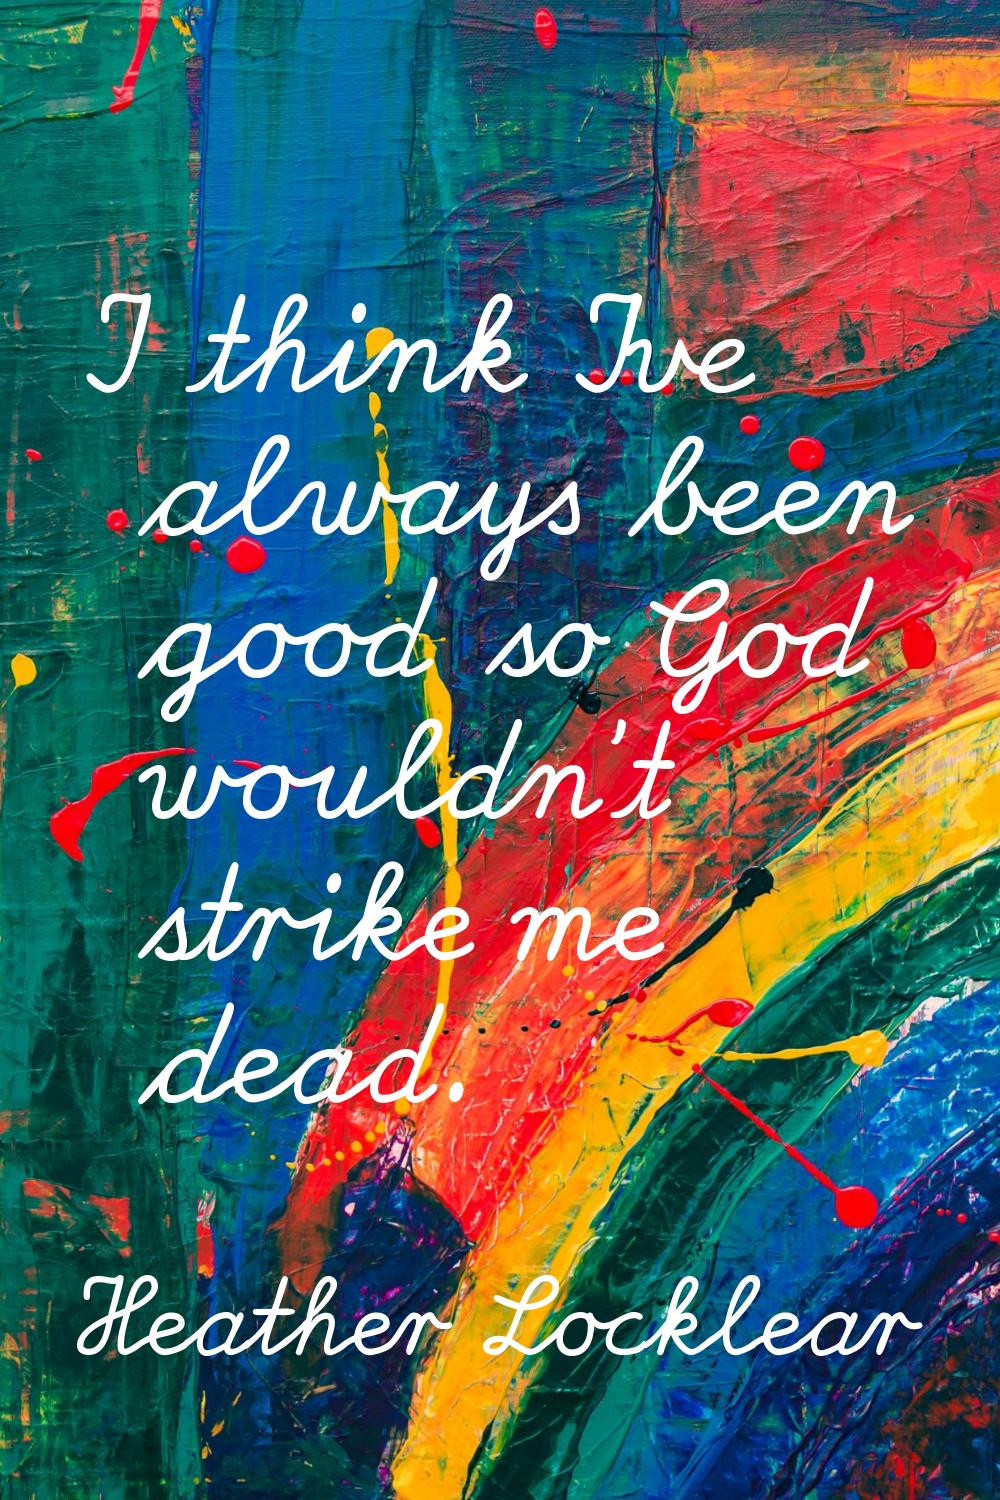 I think I've always been good so God wouldn't strike me dead.